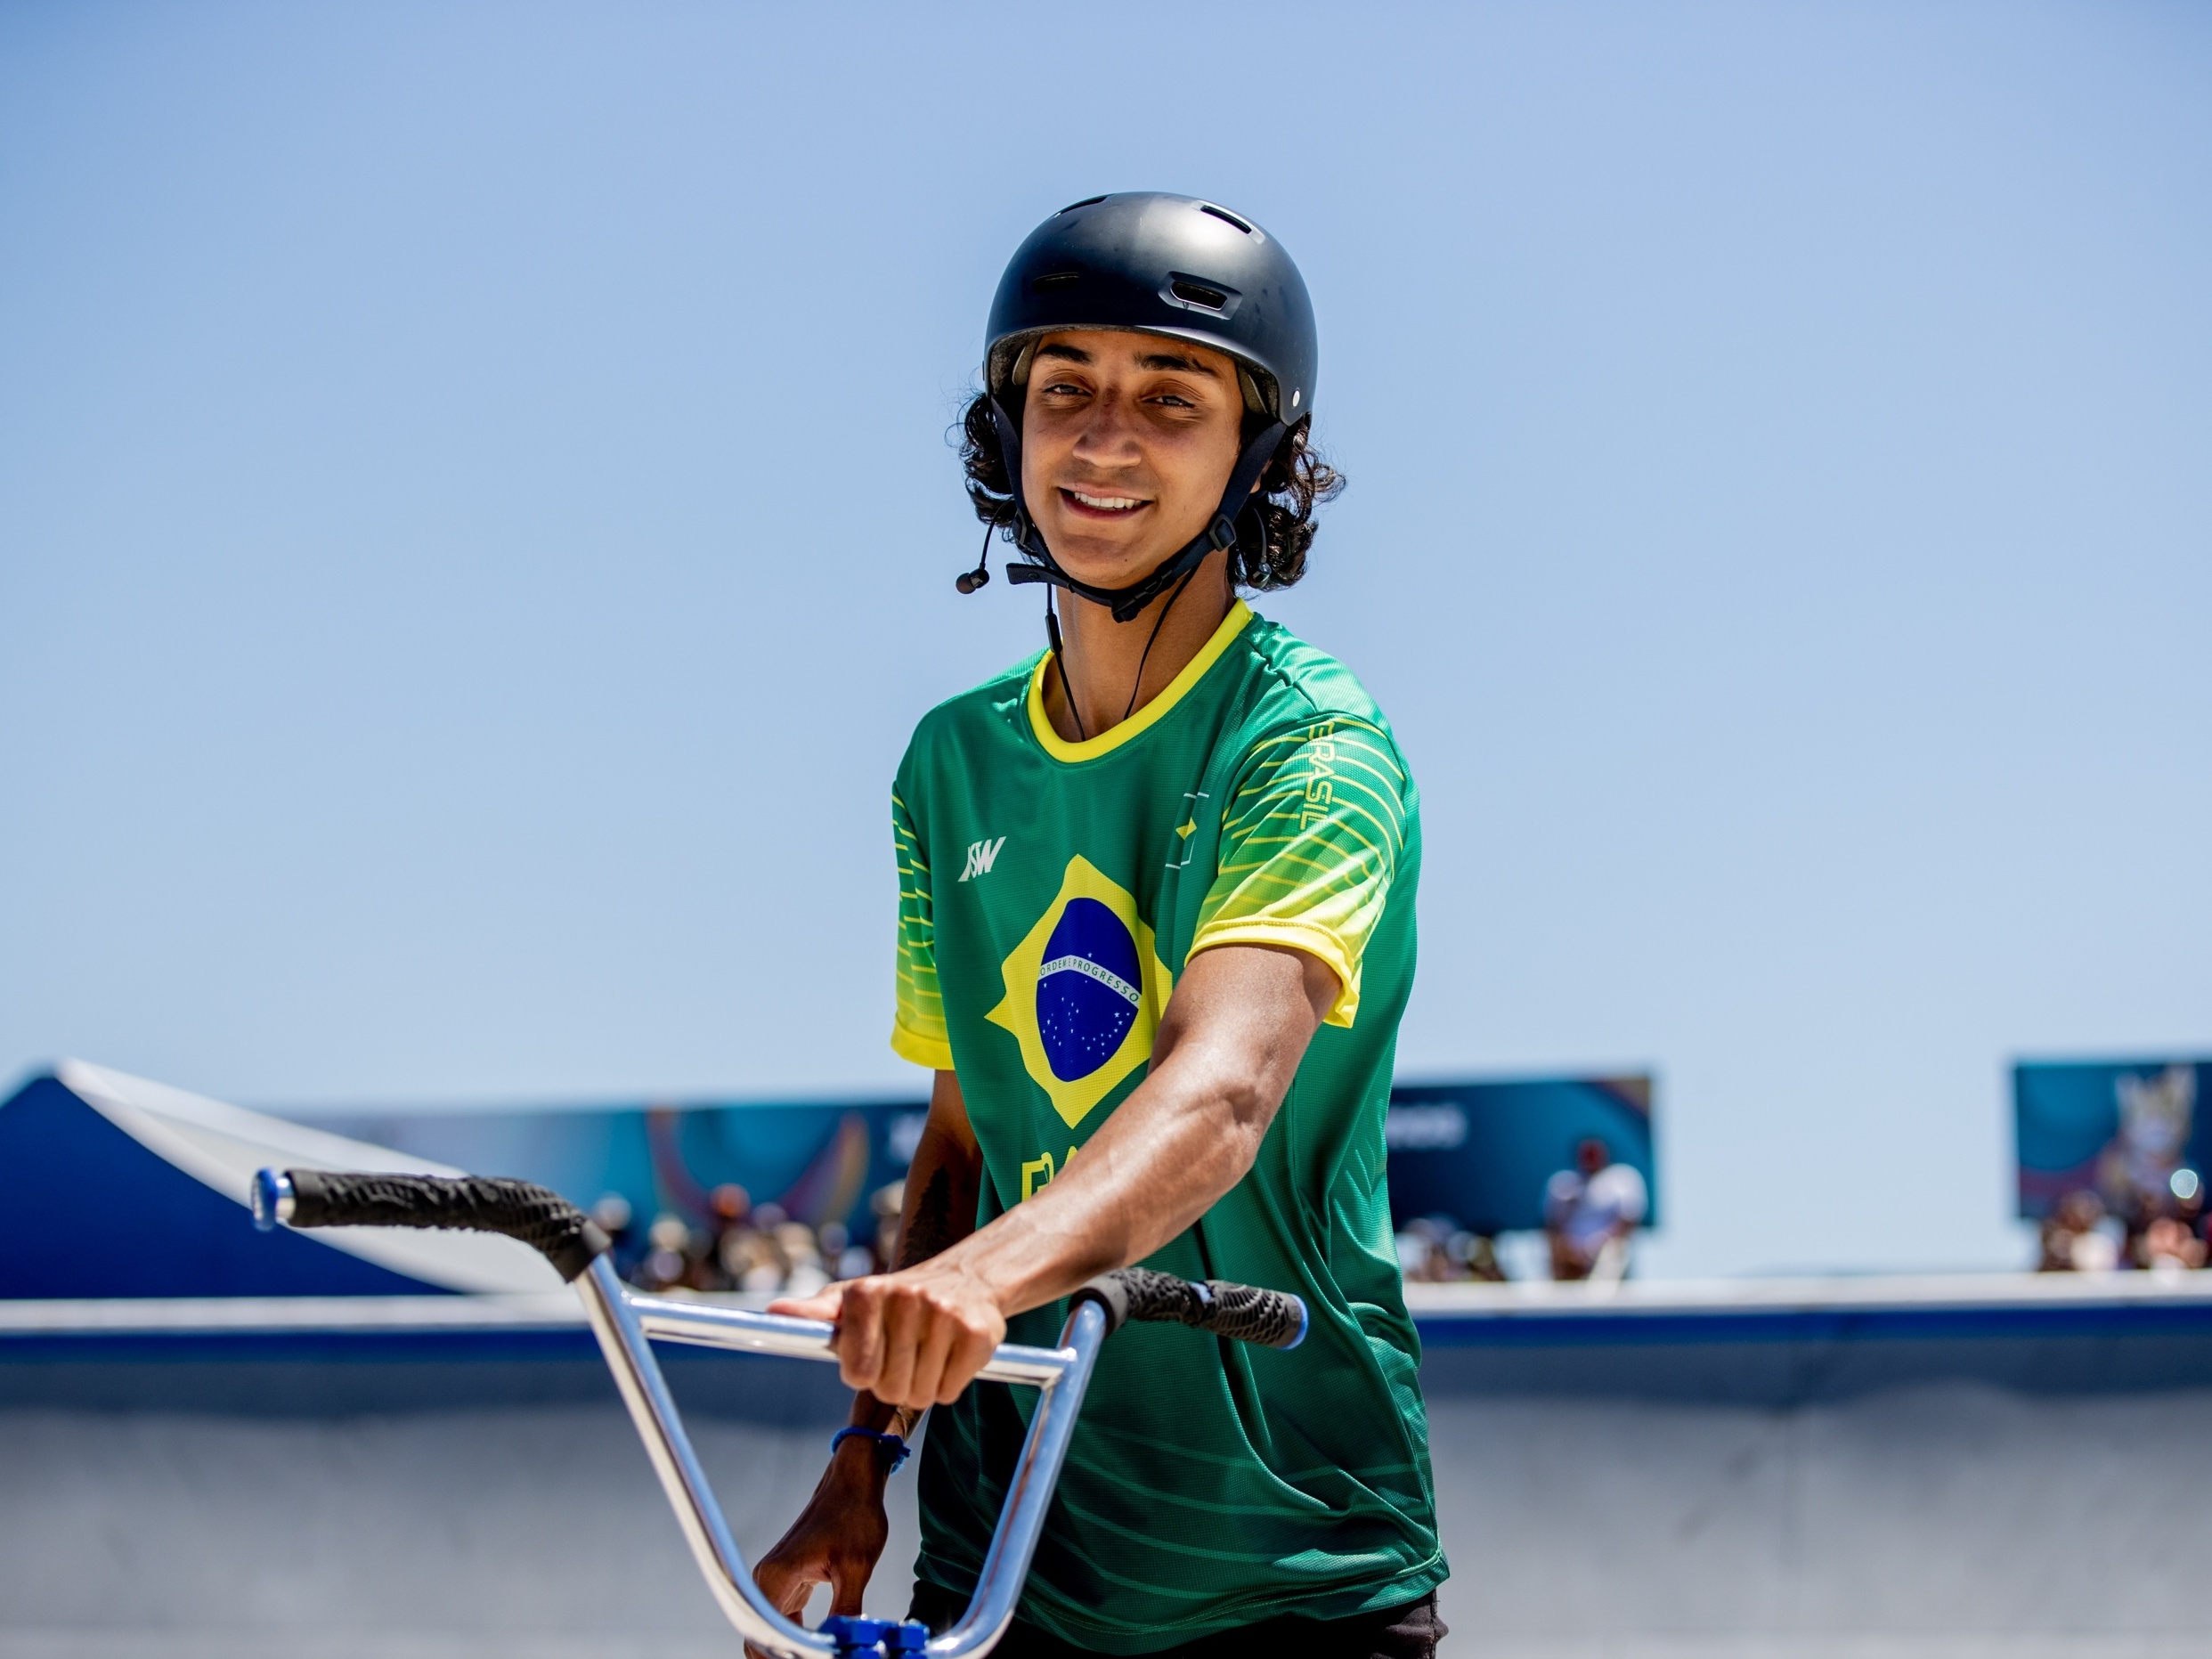 Bala Loka sai do terrão e põe Brasil no mapa da prova olímpica mais radical